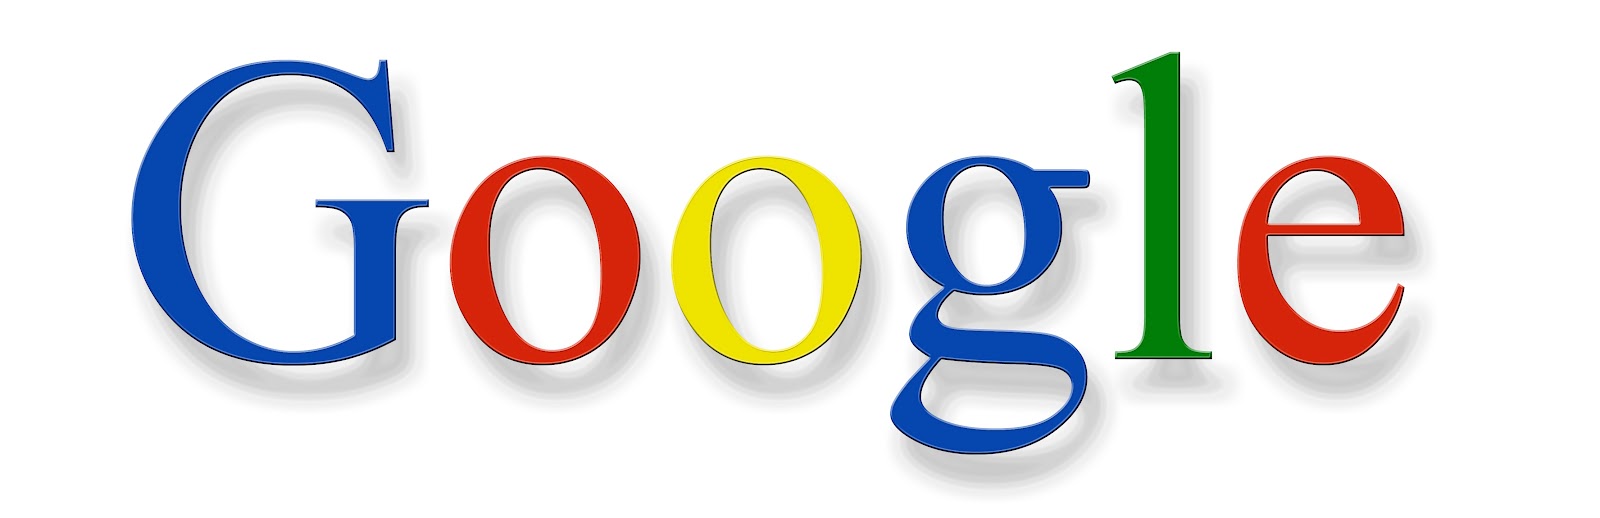 Google ark. Гугл. Цветной логотип гугл. Надпись Google. Гугл 2010.